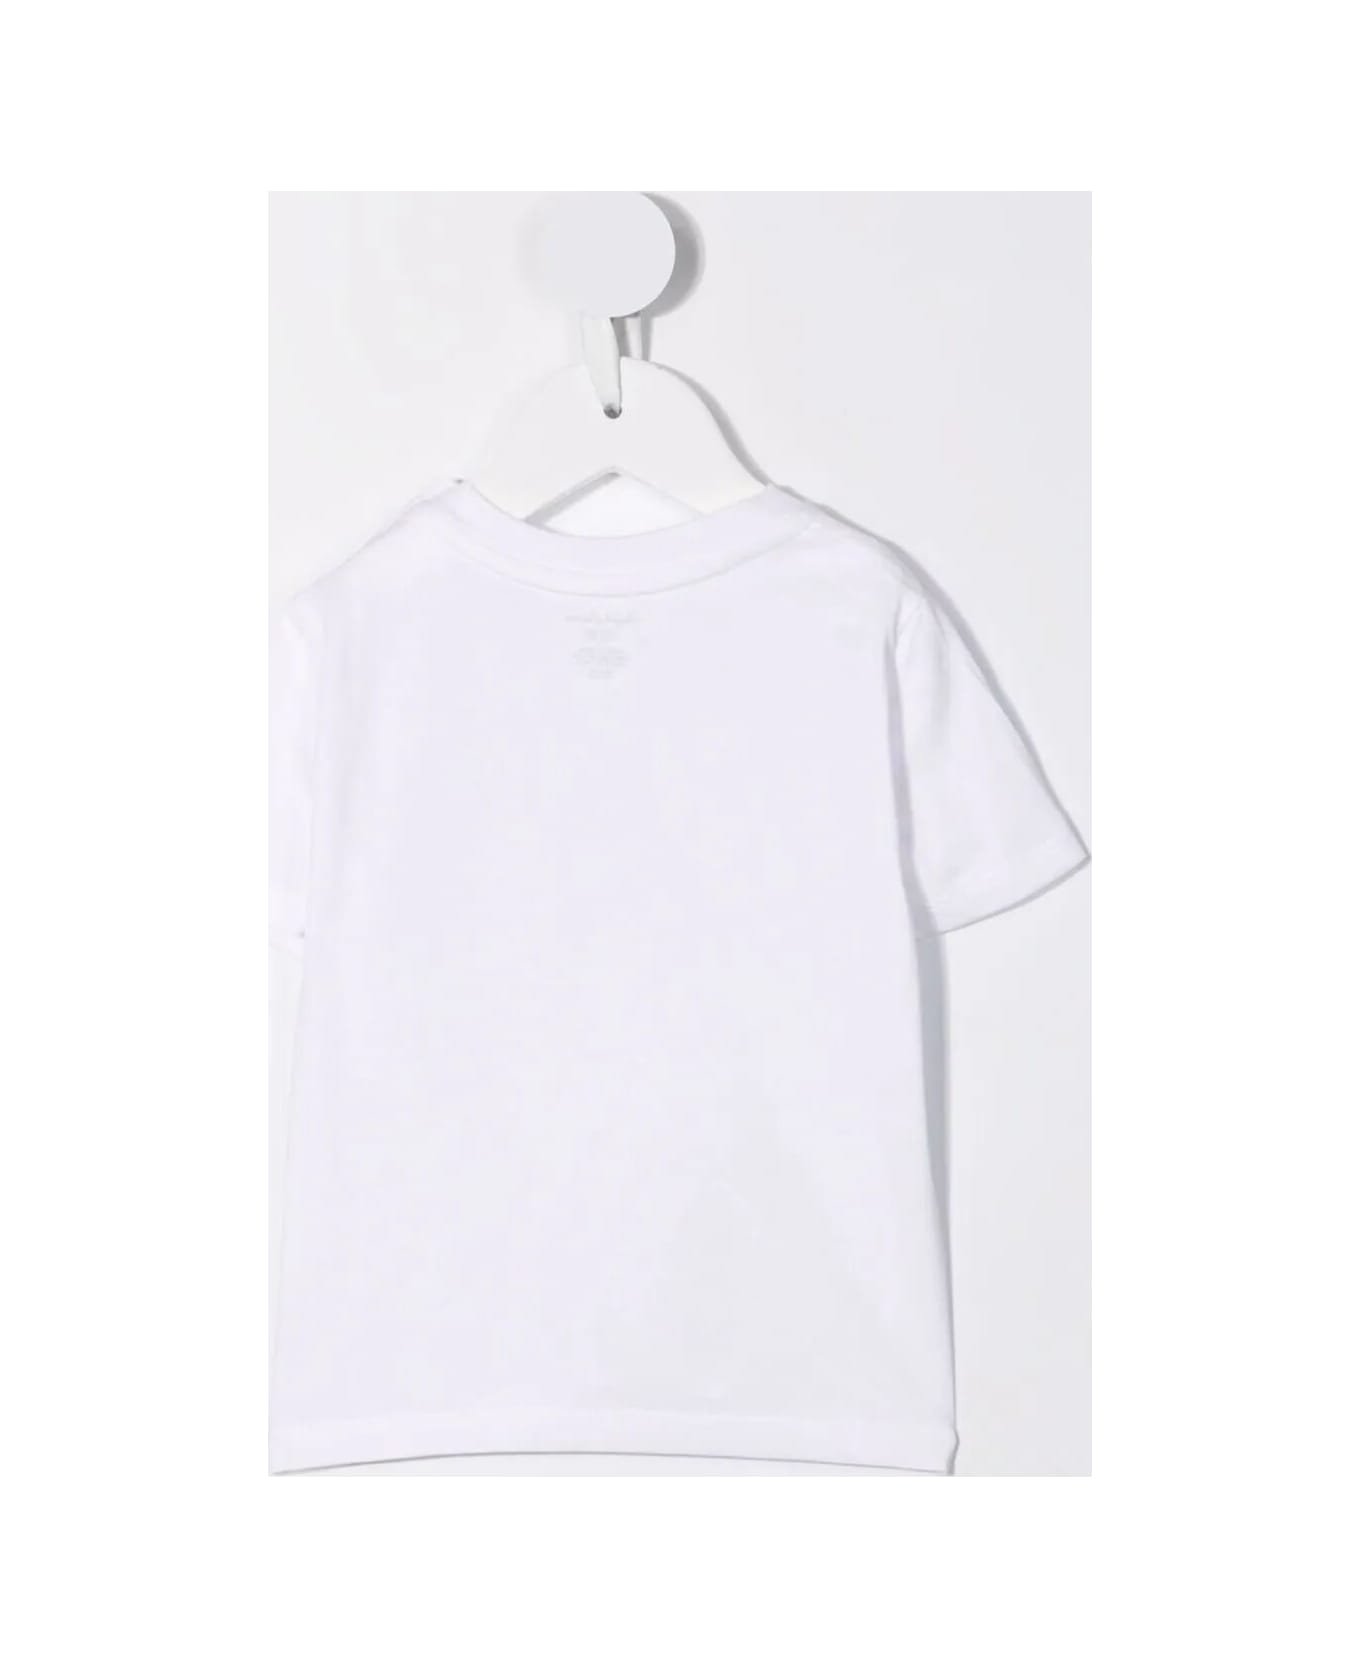 Polo Ralph Lauren Ss Cn Tops T-shirt - White